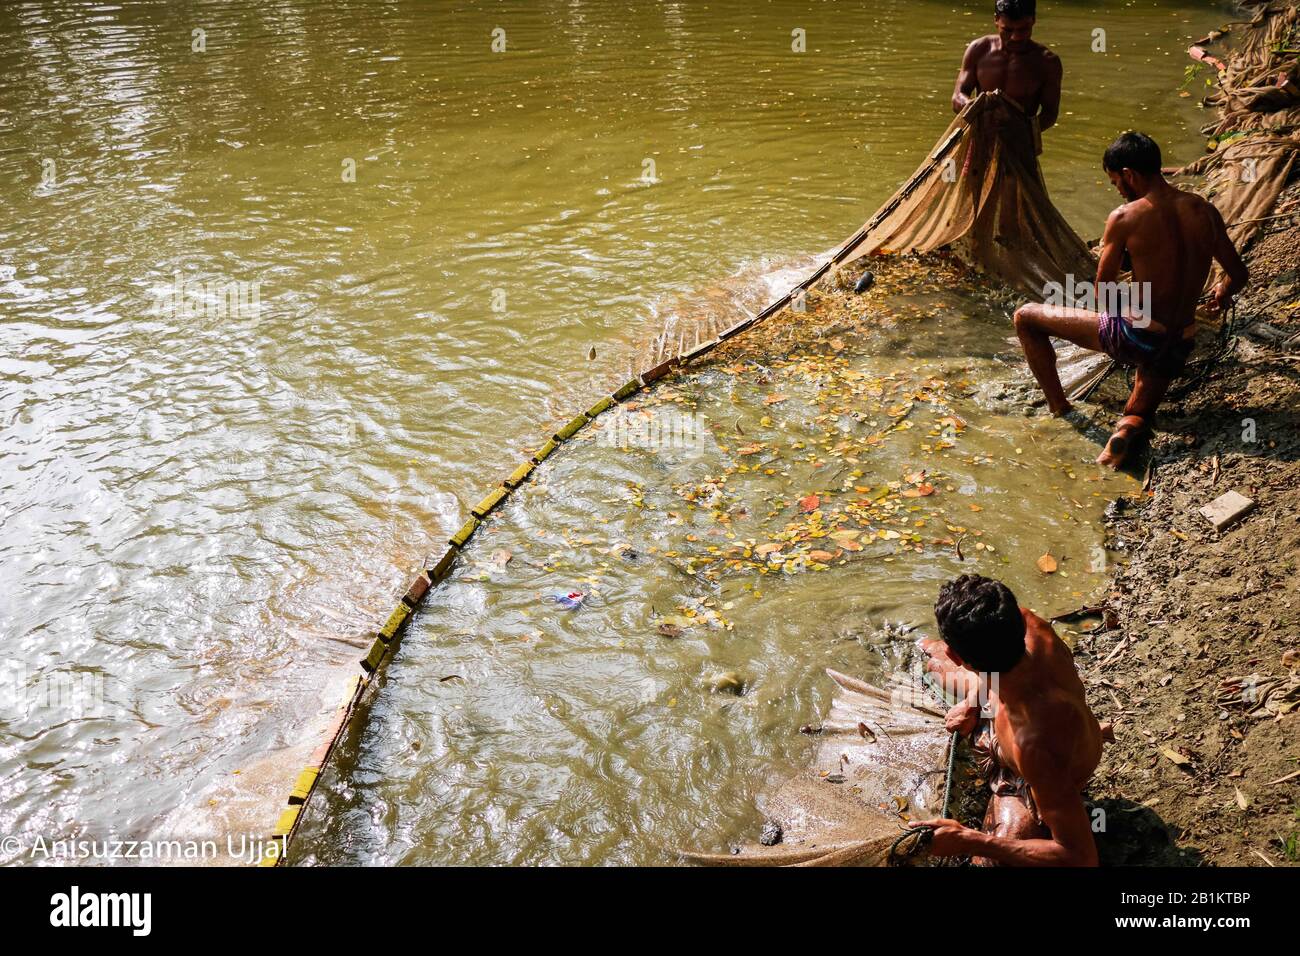 Fisch ist eine der wichtigsten Proteinquellen für bangladeschische Menschen. Der Bauer erntet seine Fische aus dem Teich. Stockfoto